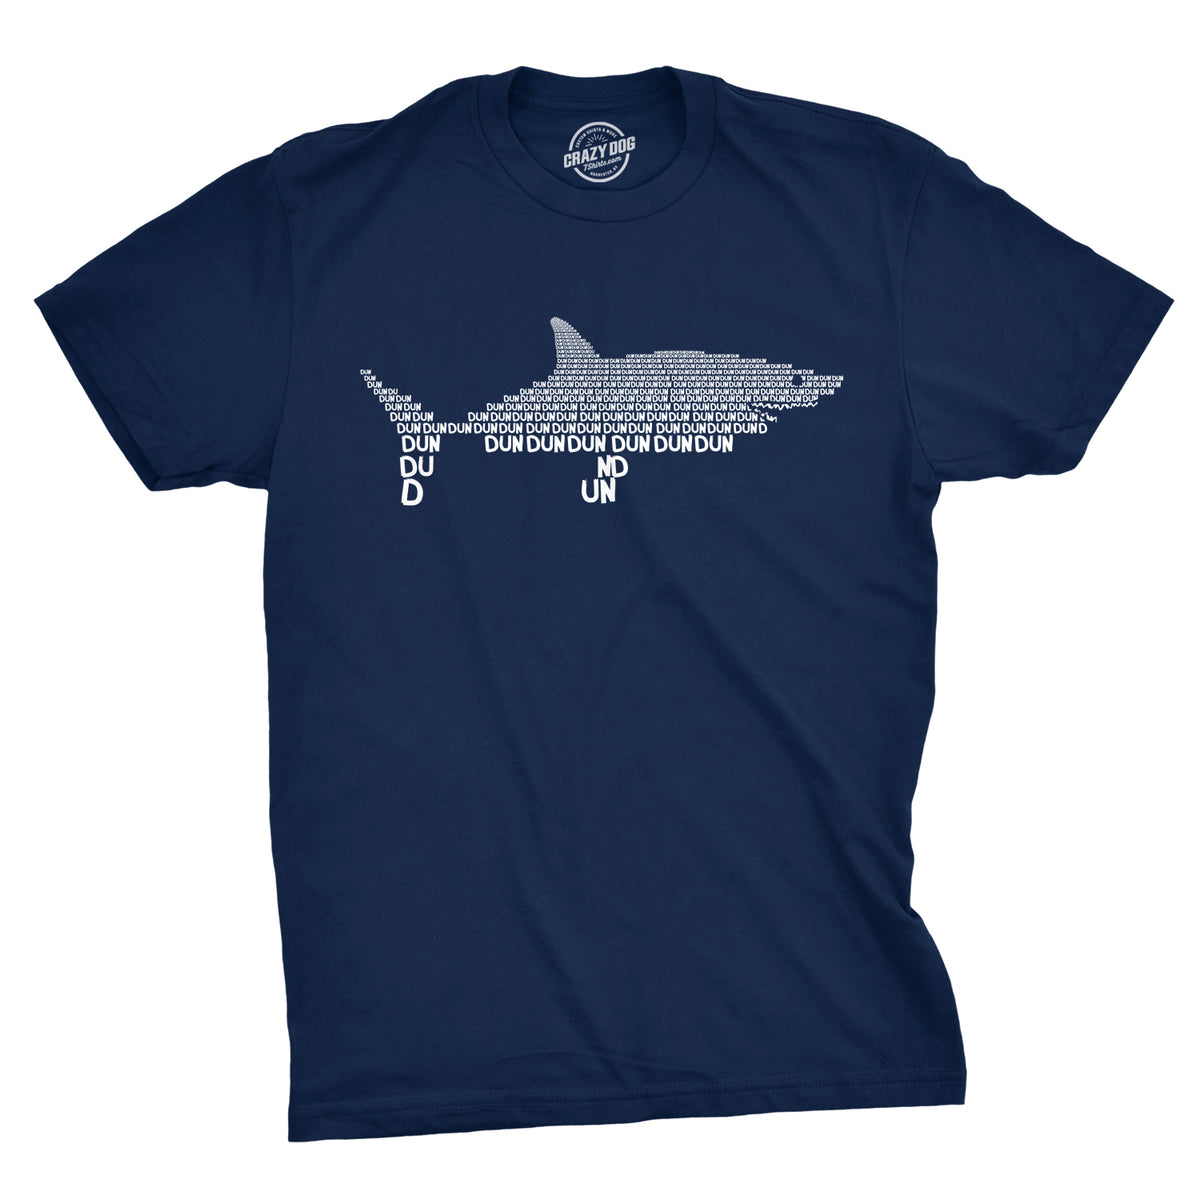 Funny Heather Navy - Dun Dun Dun Dun Dun Graphic Shark Text Mens T Shirt Nerdy Shark Week Music Tee